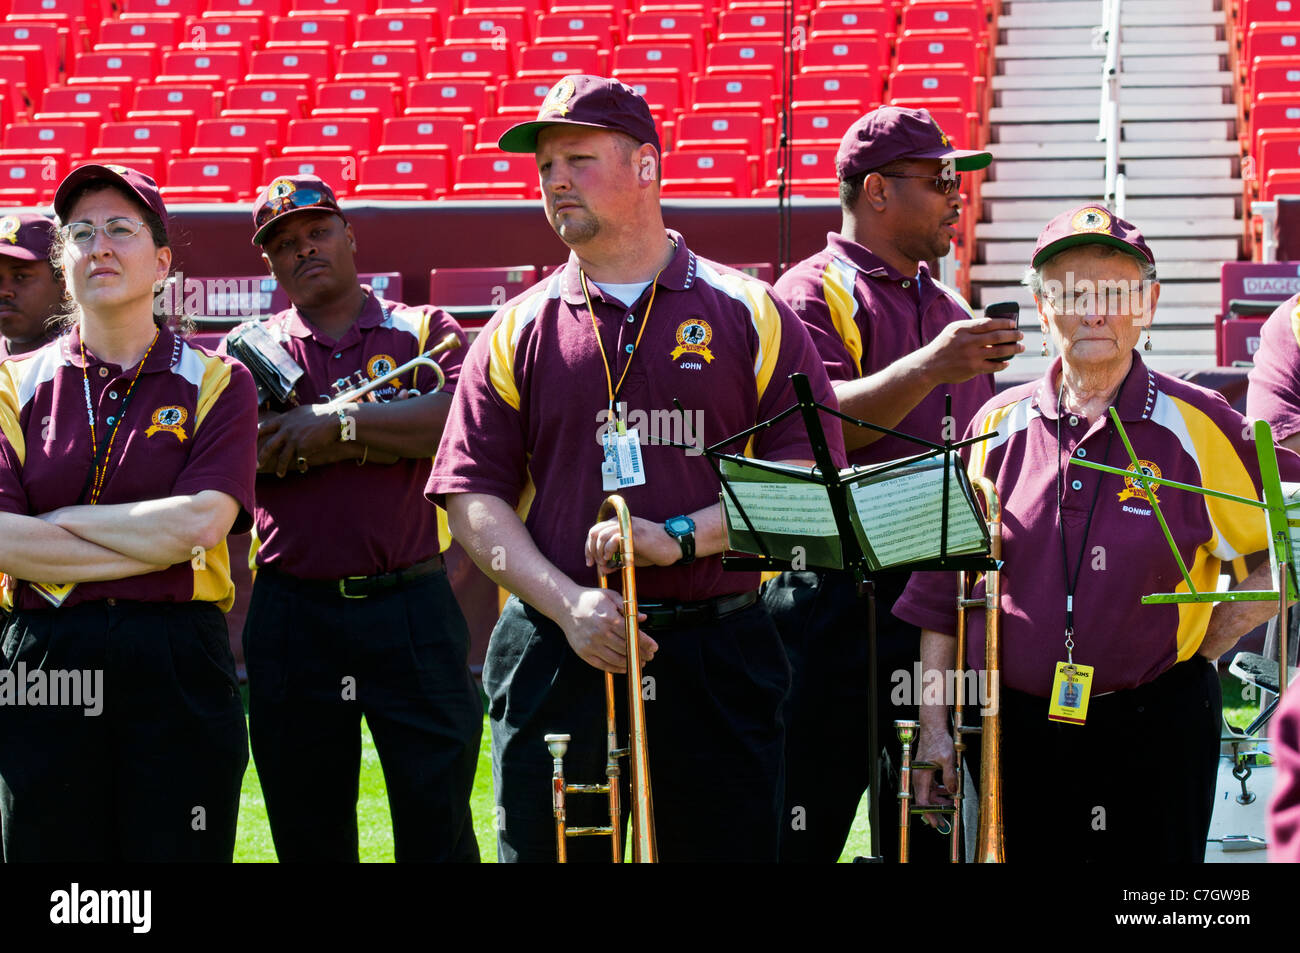 The Washington Redskins marching band. Stock Photo